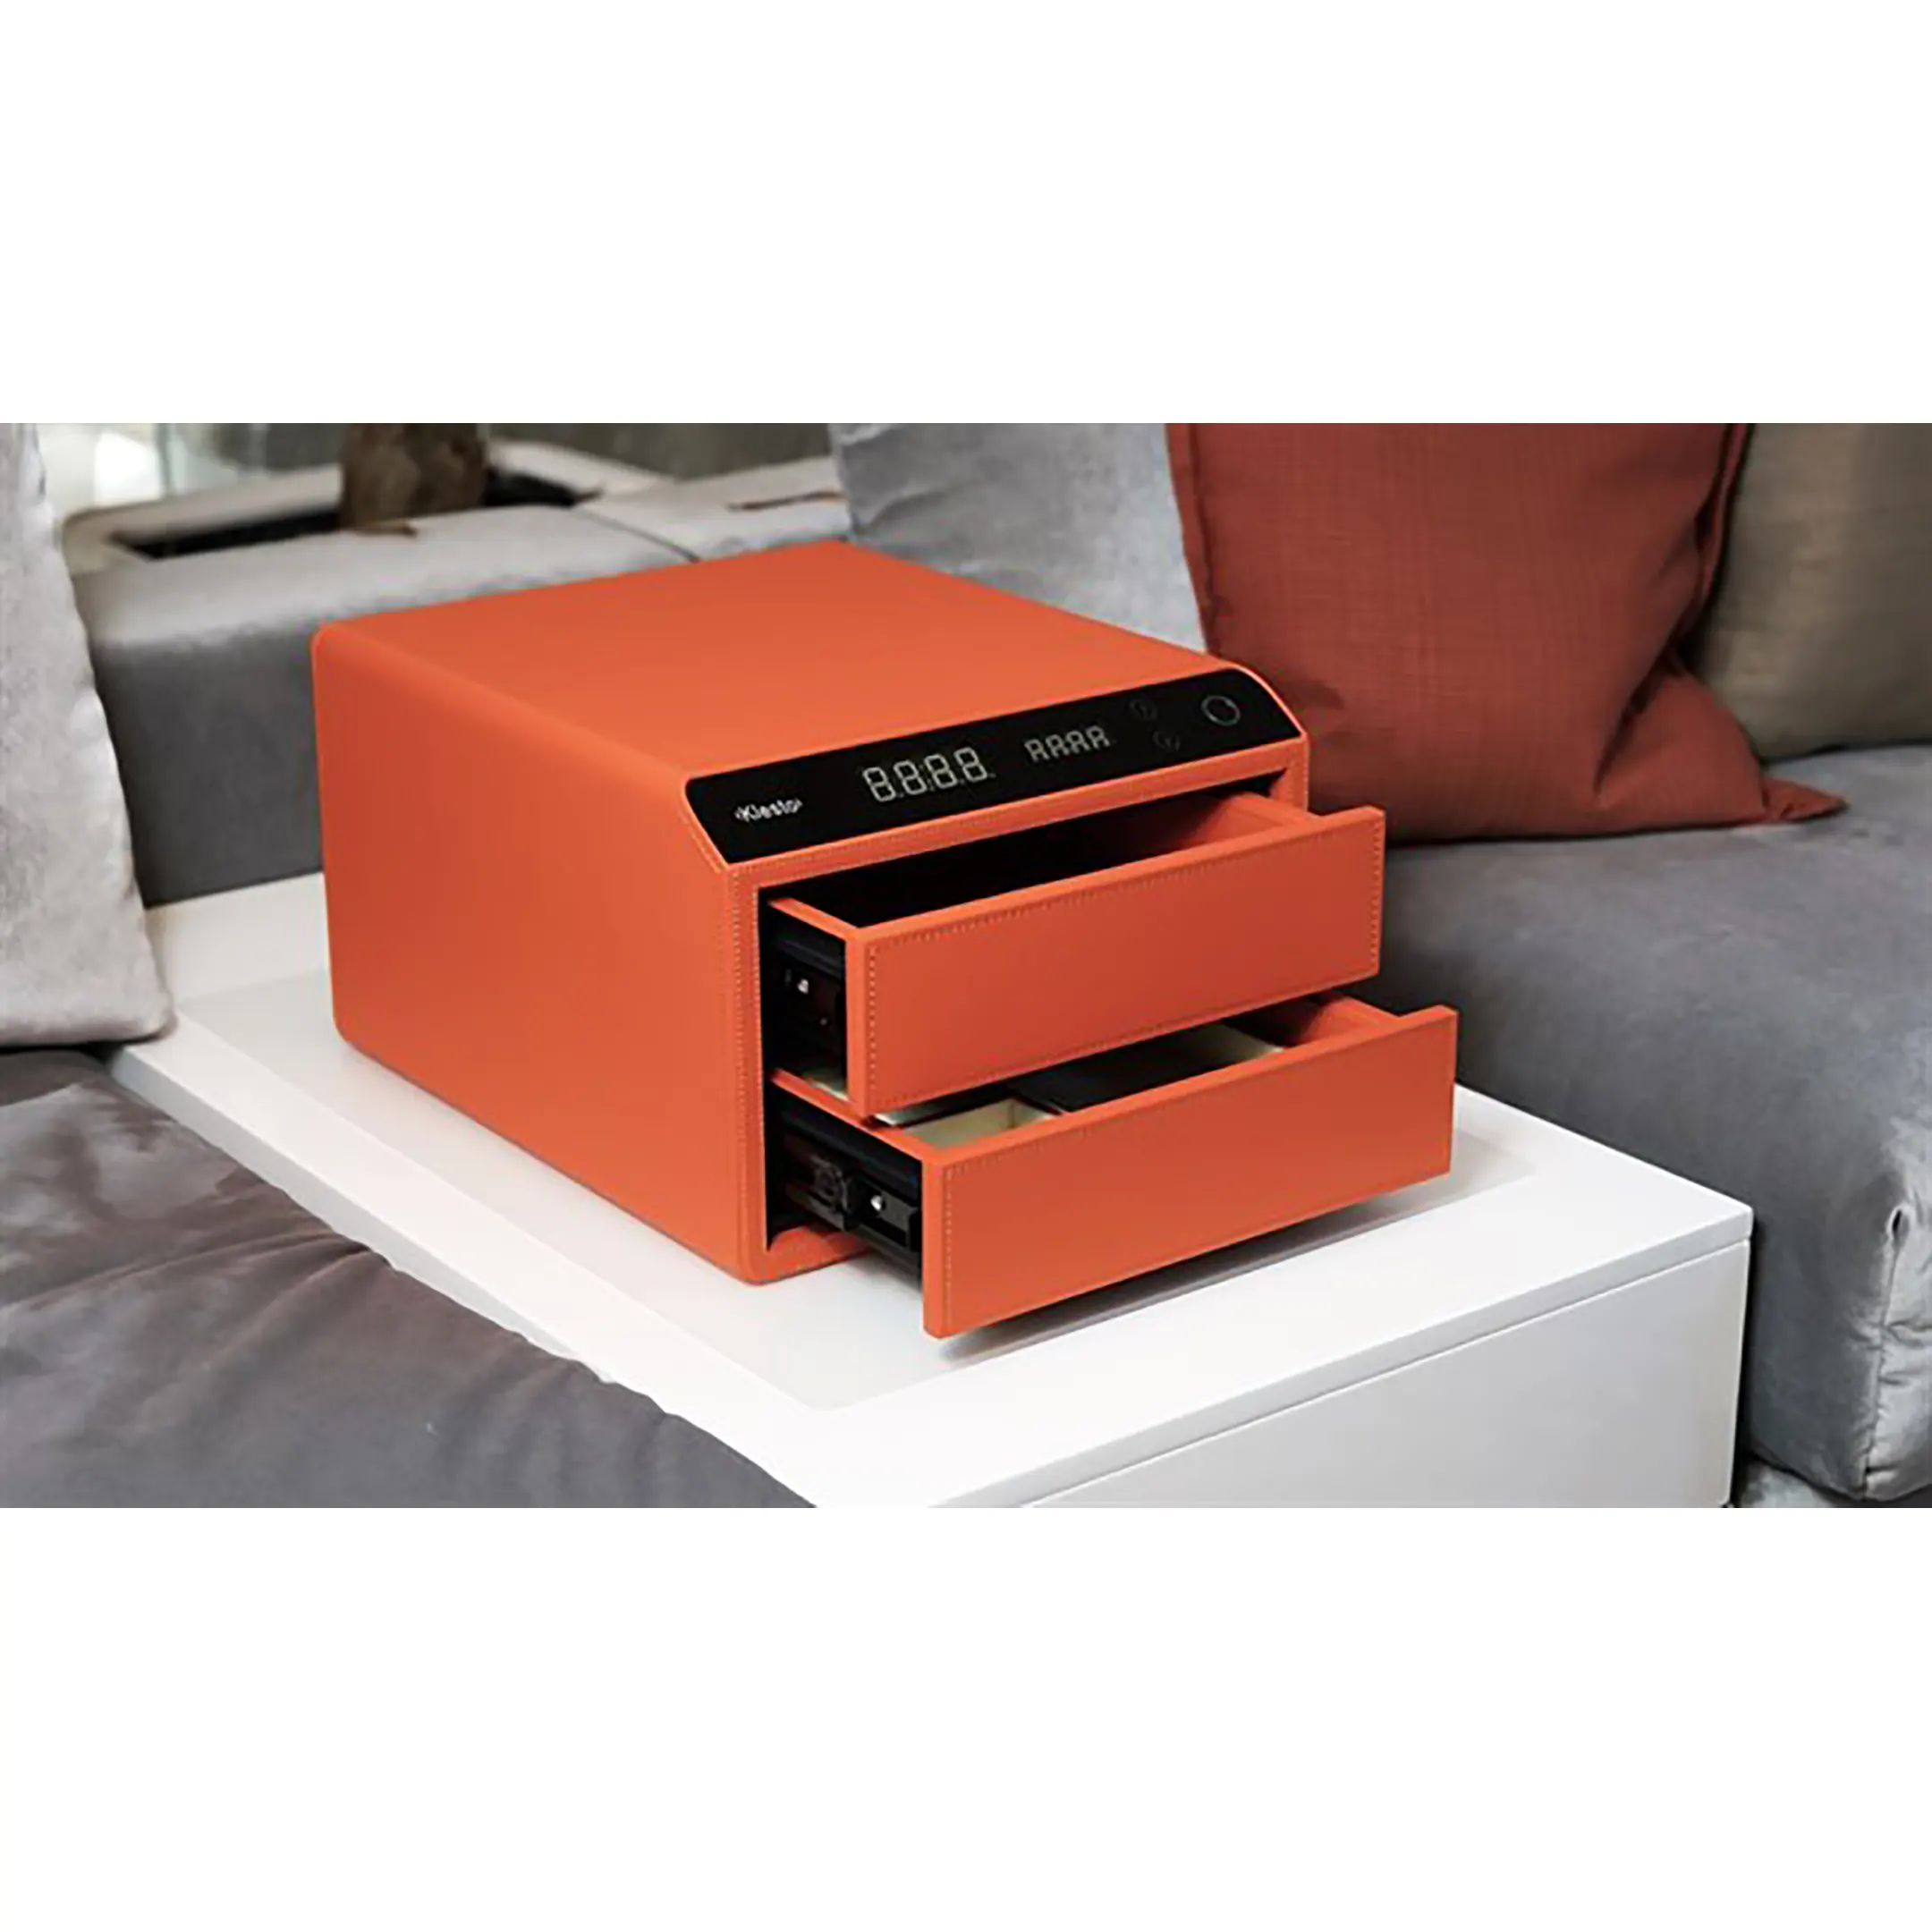 Сейф мебельный Klesto Smart JS2, цвет спелый апельсин